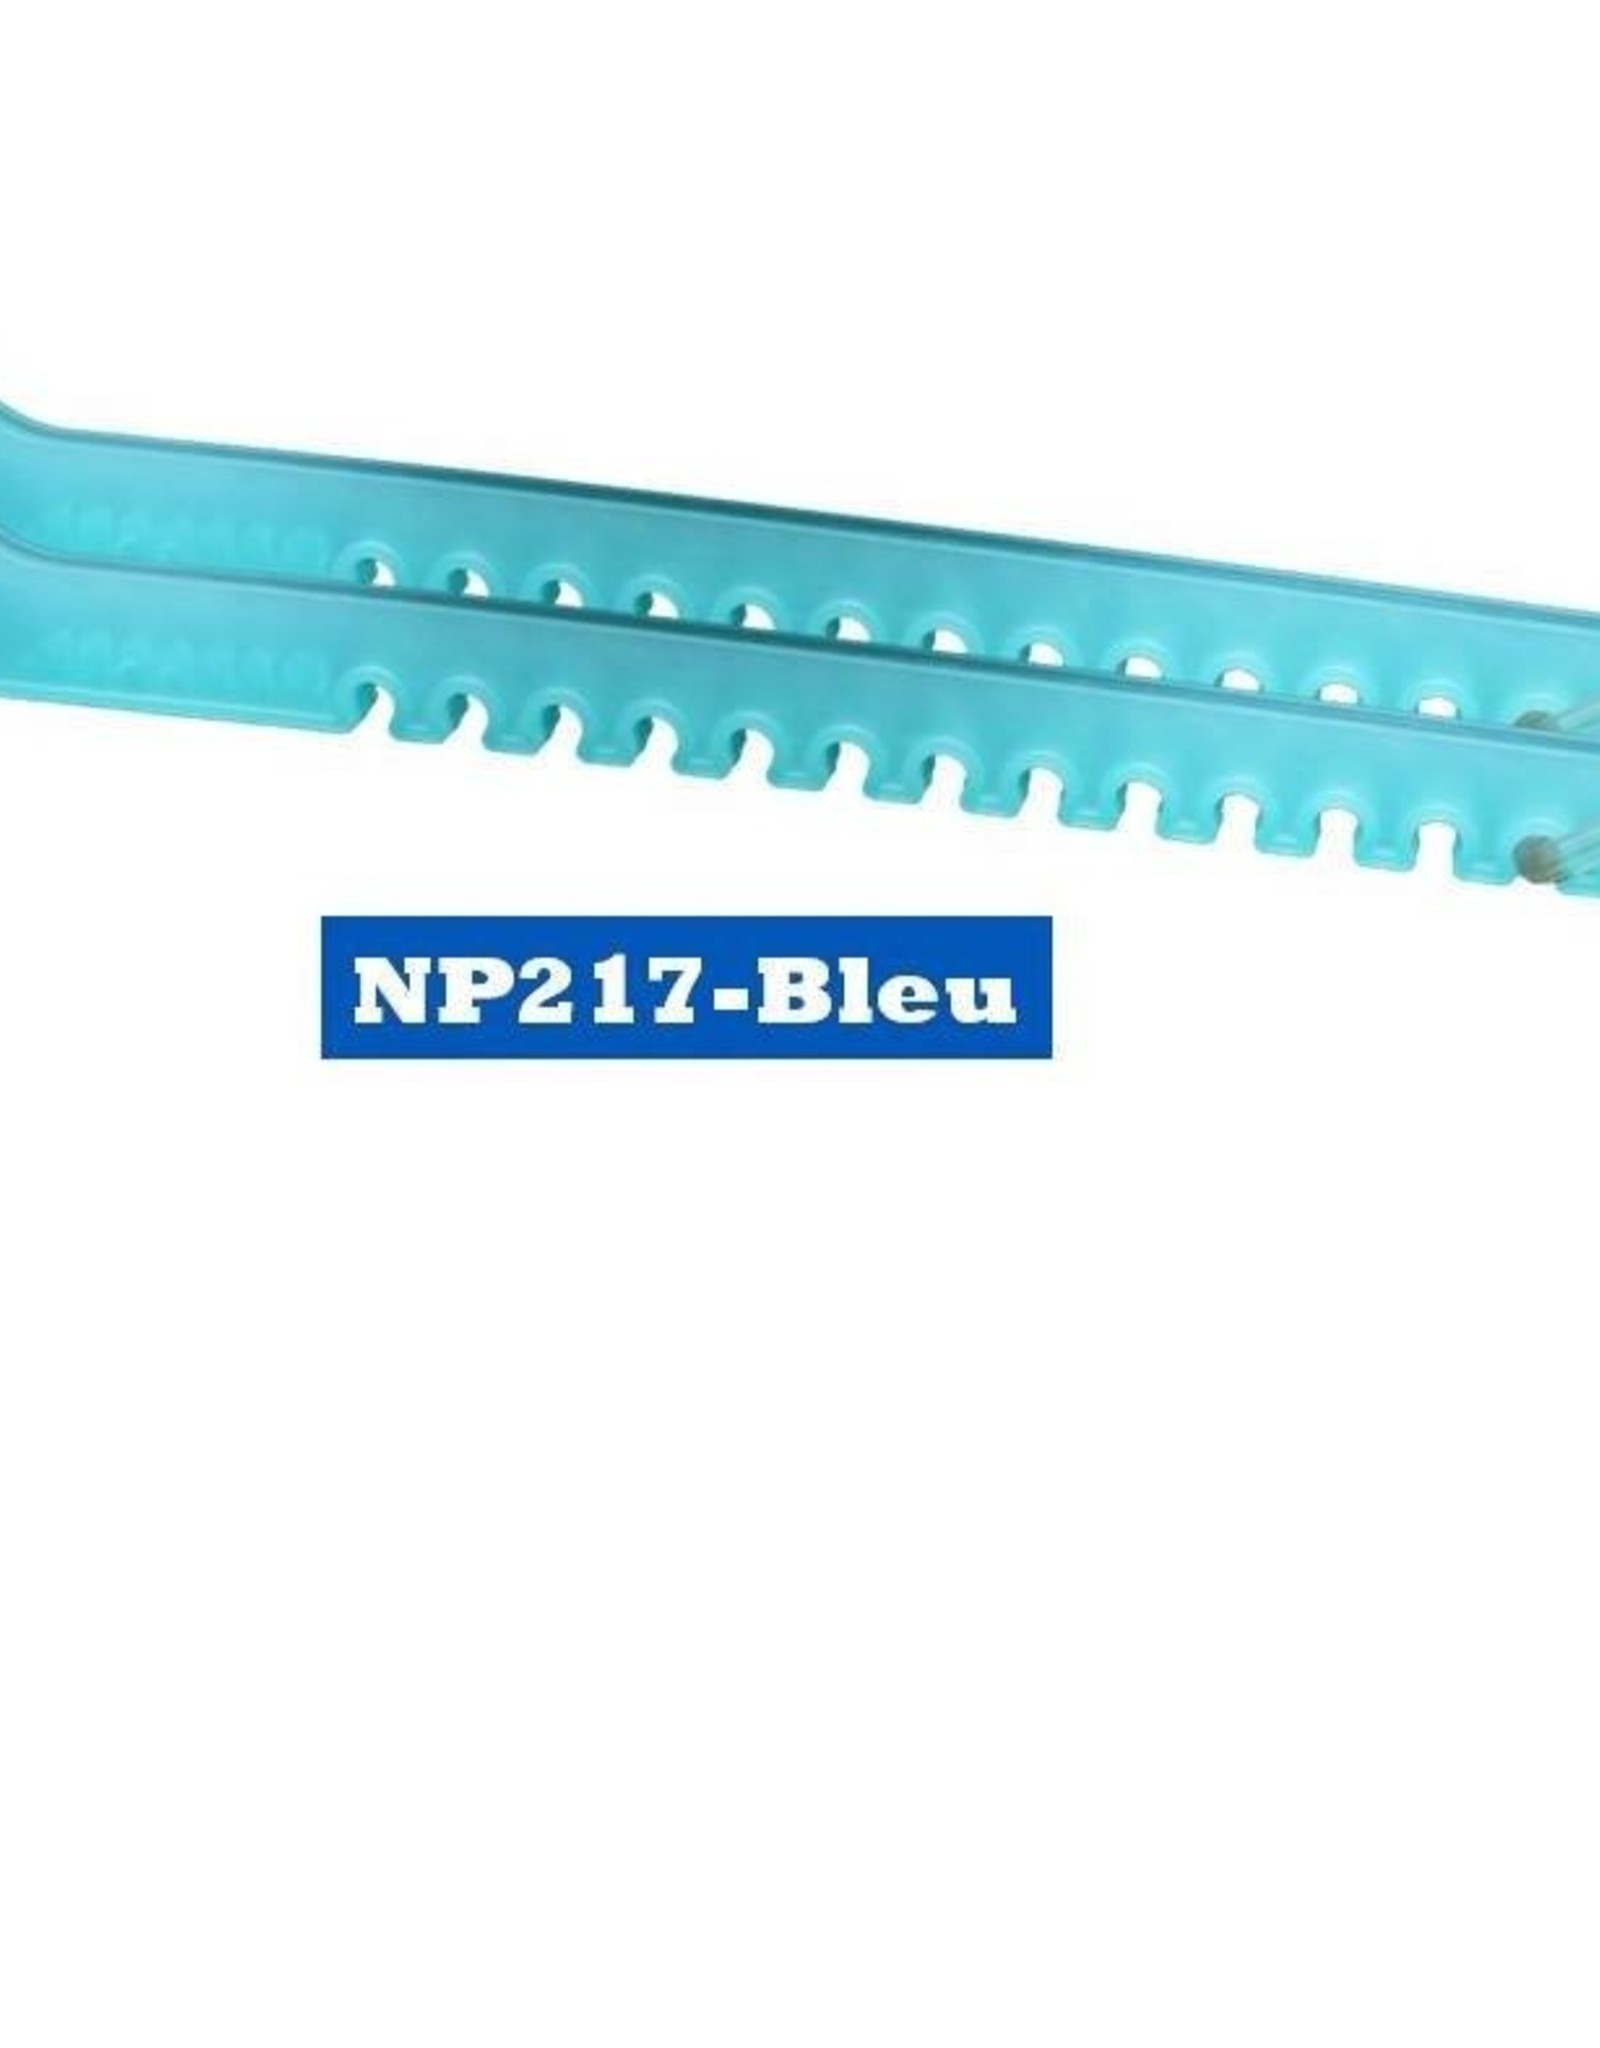 BLUE SPORTS NP217 Protege Lame Bleu Ciel (Artistique)